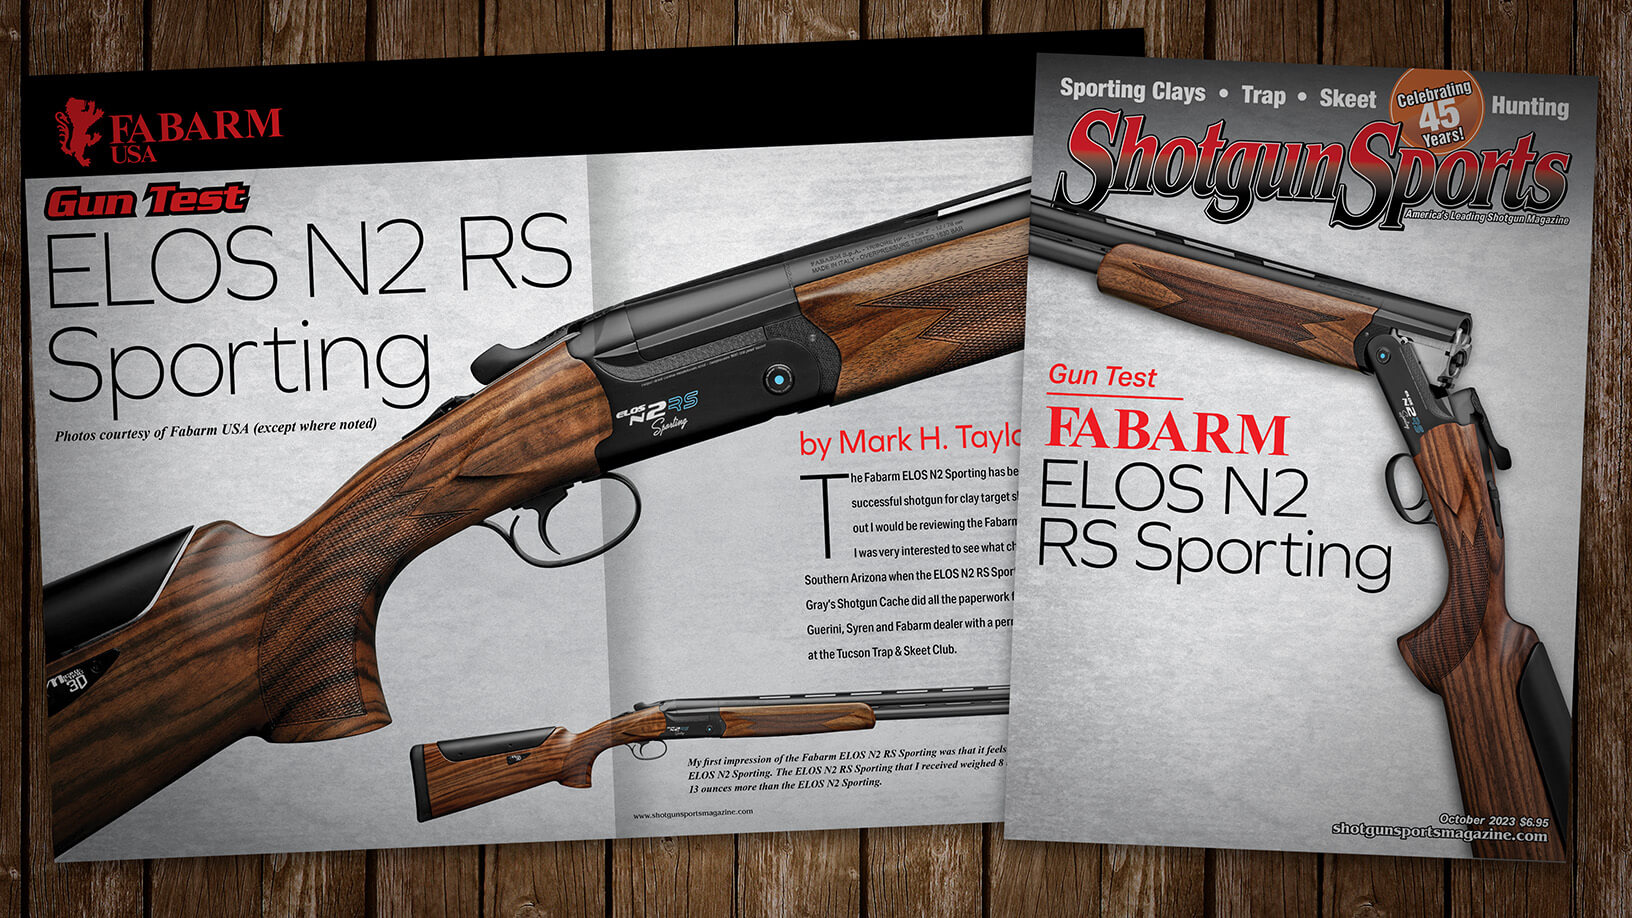 [Shotgun Sports 10.23] Gun Test: Fabarm Elos N2 RS Sporting